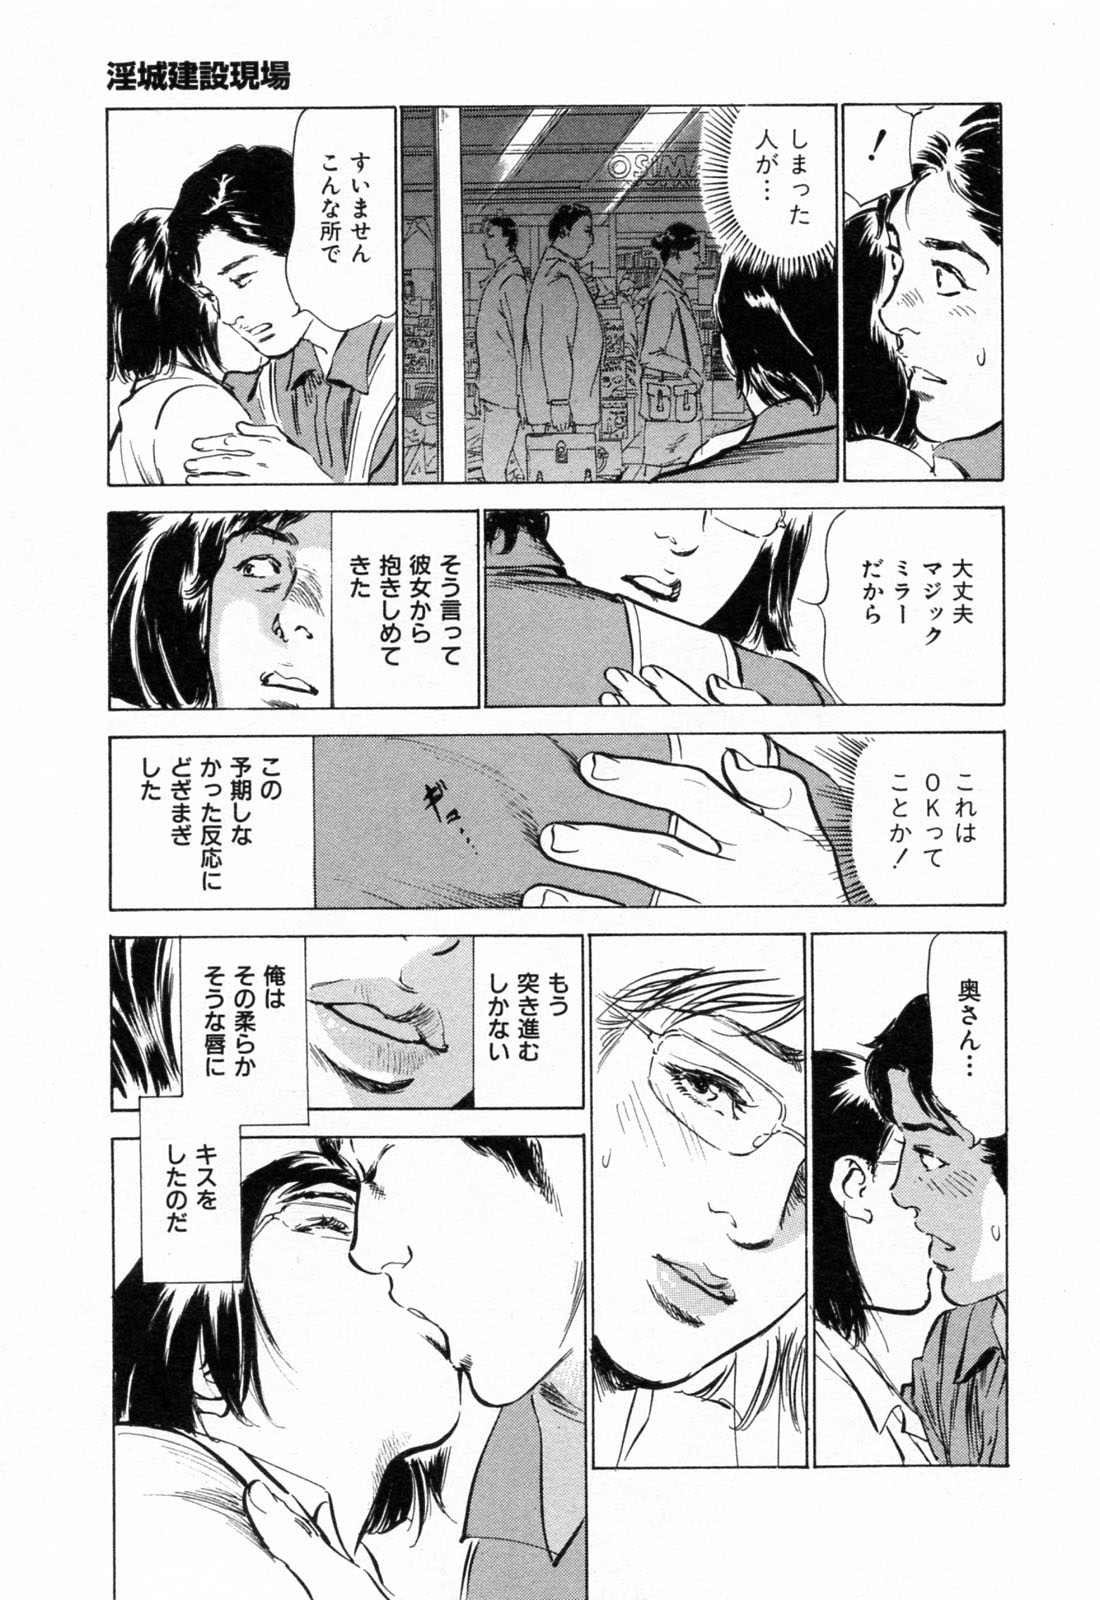 [Hazuki Kaoru] Gokinjo Okusama no Naishobanashi 1 page 15 full